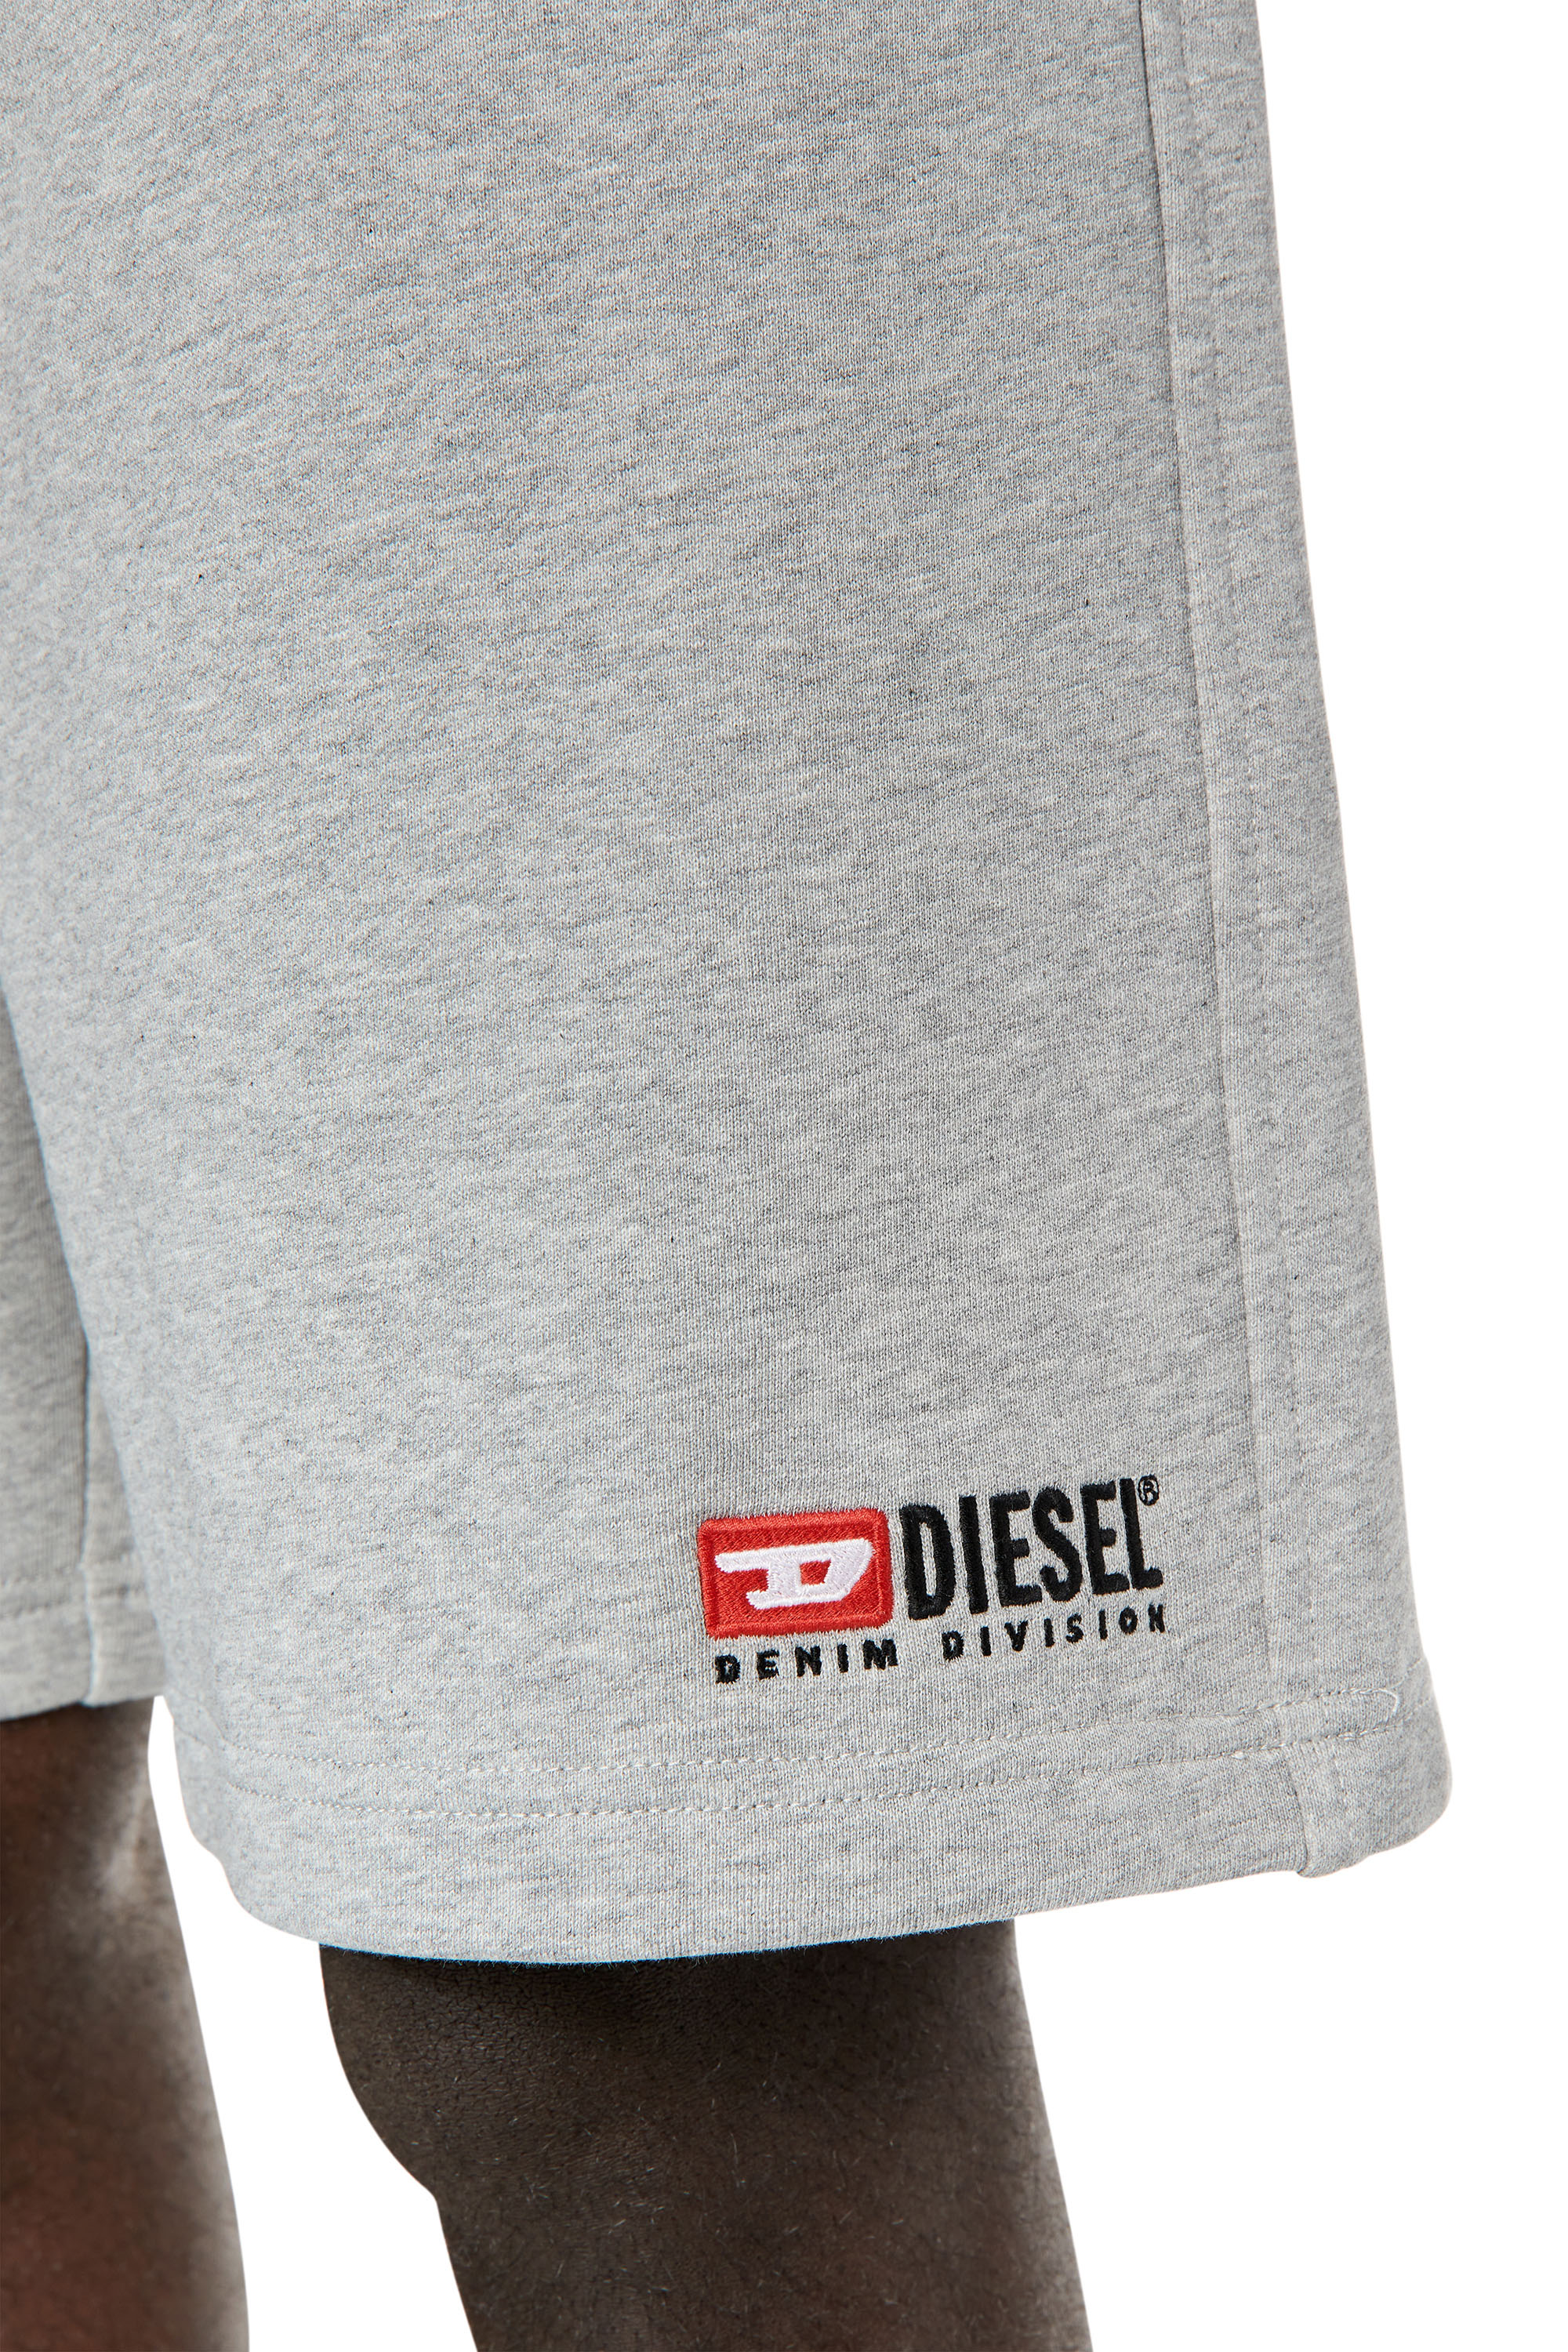 Diesel - P-CROWN-DIV, Grey - Image 5